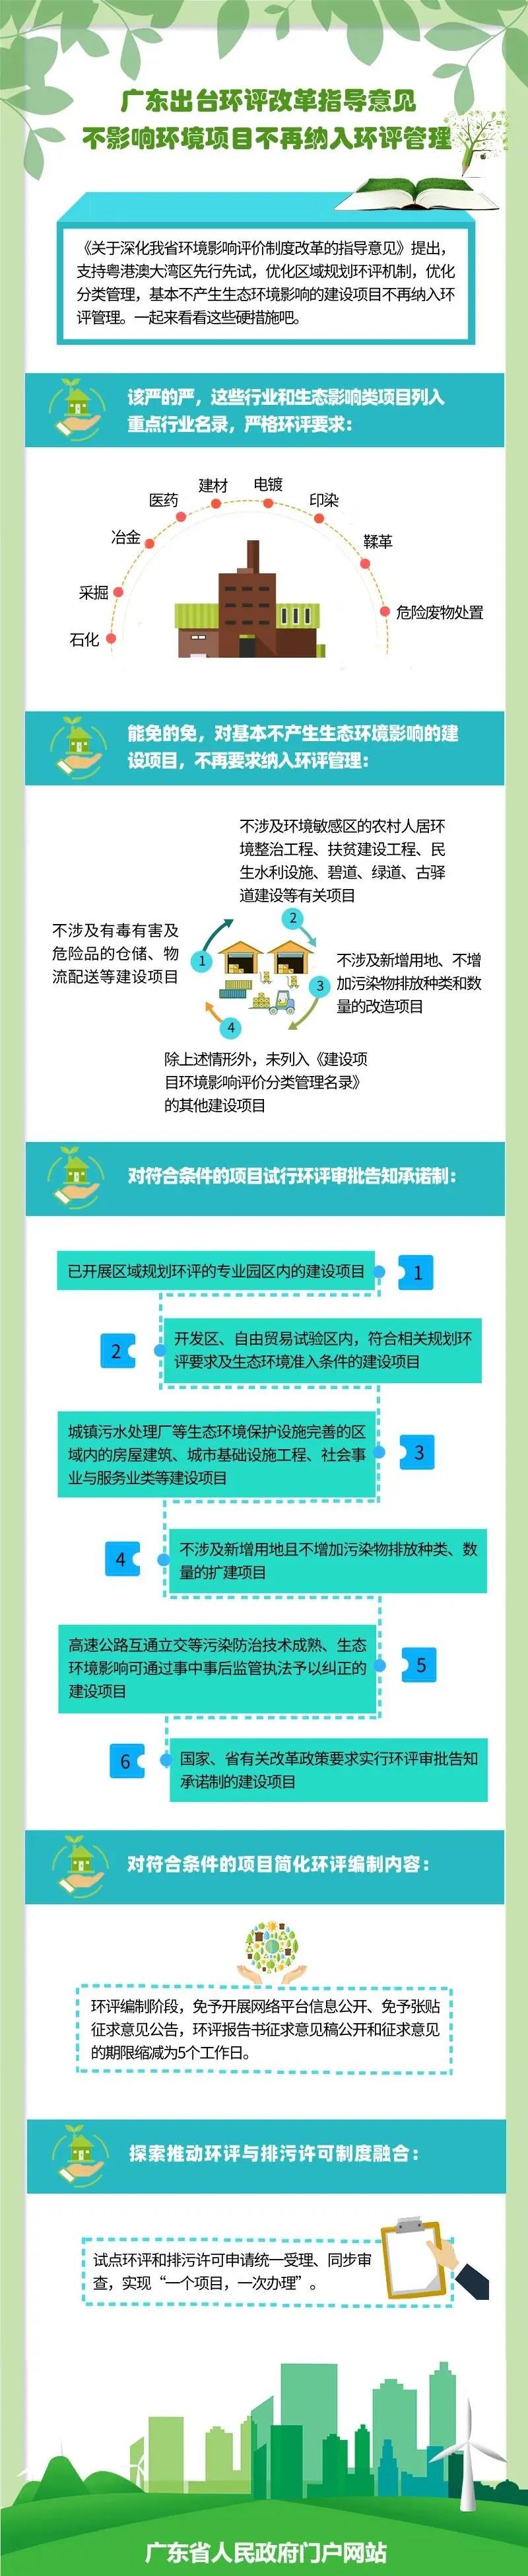 广东出台环评改革指导意见不影响环境项目不再纳入环评管理